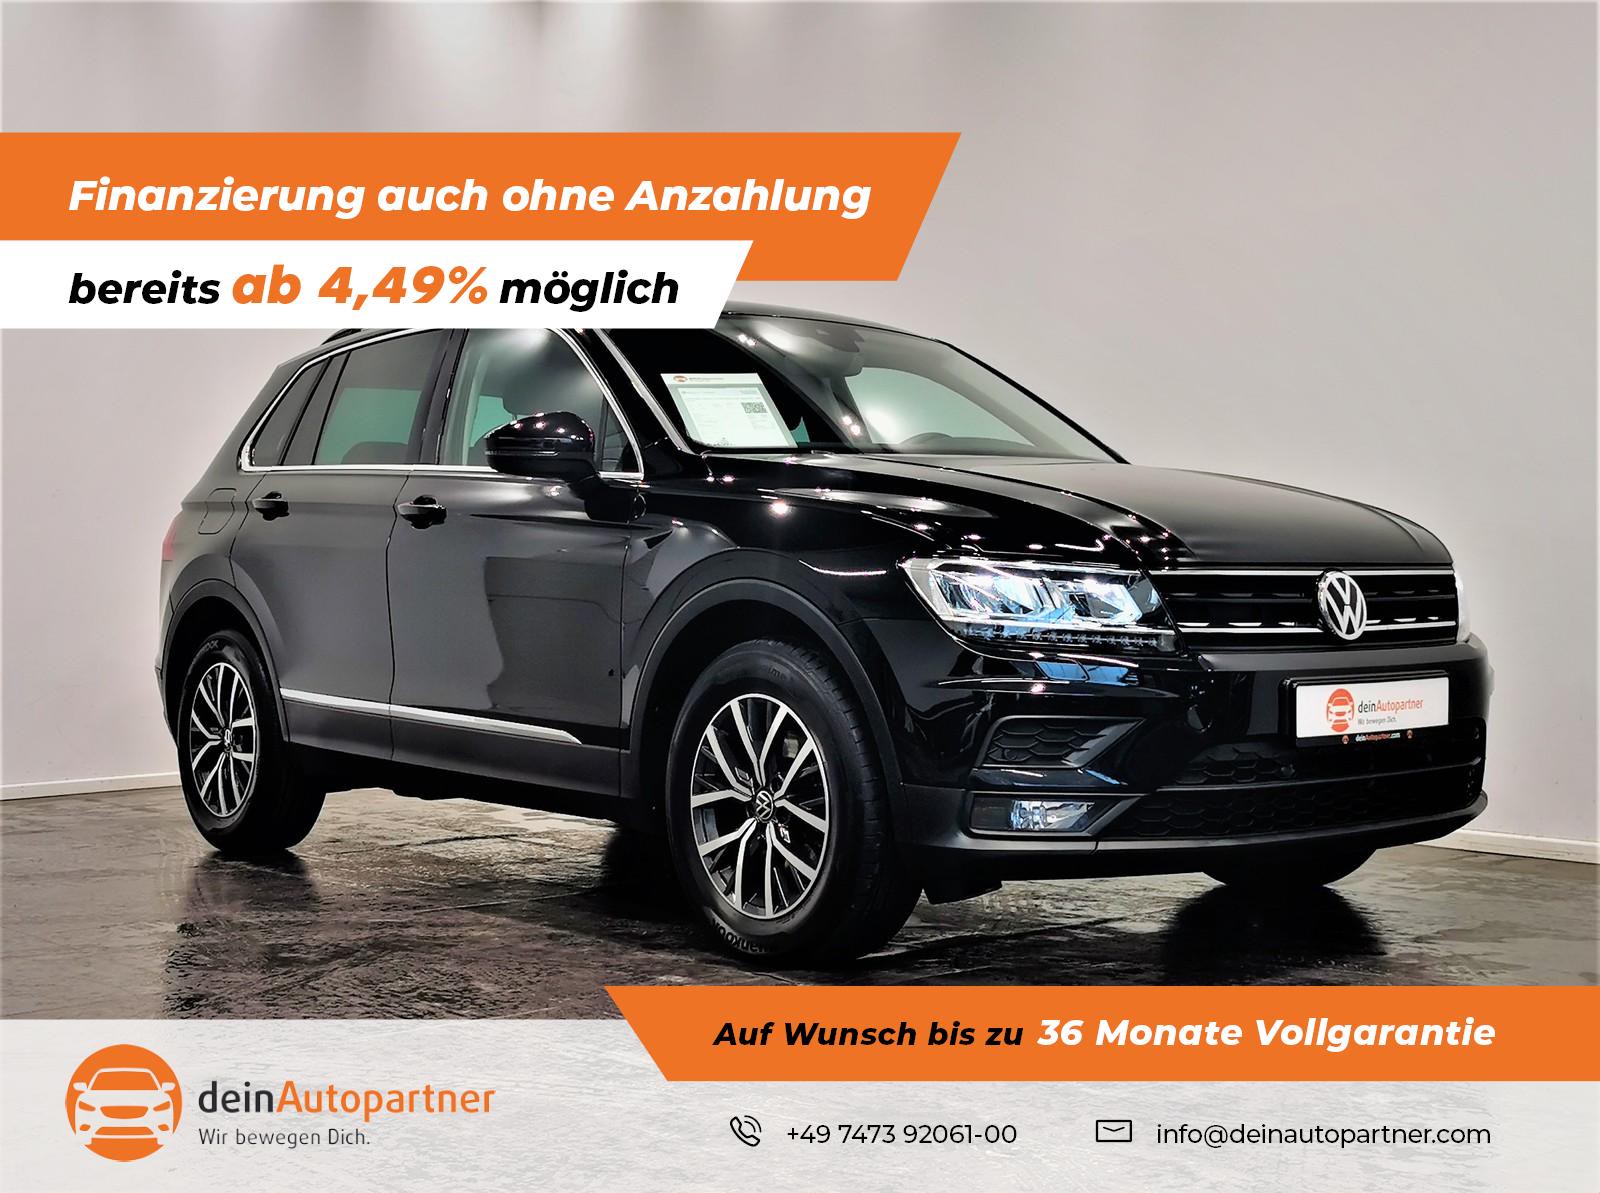 Volkswagen Tiguan gebraucht kaufen in Mössingen Preis 24990 eur